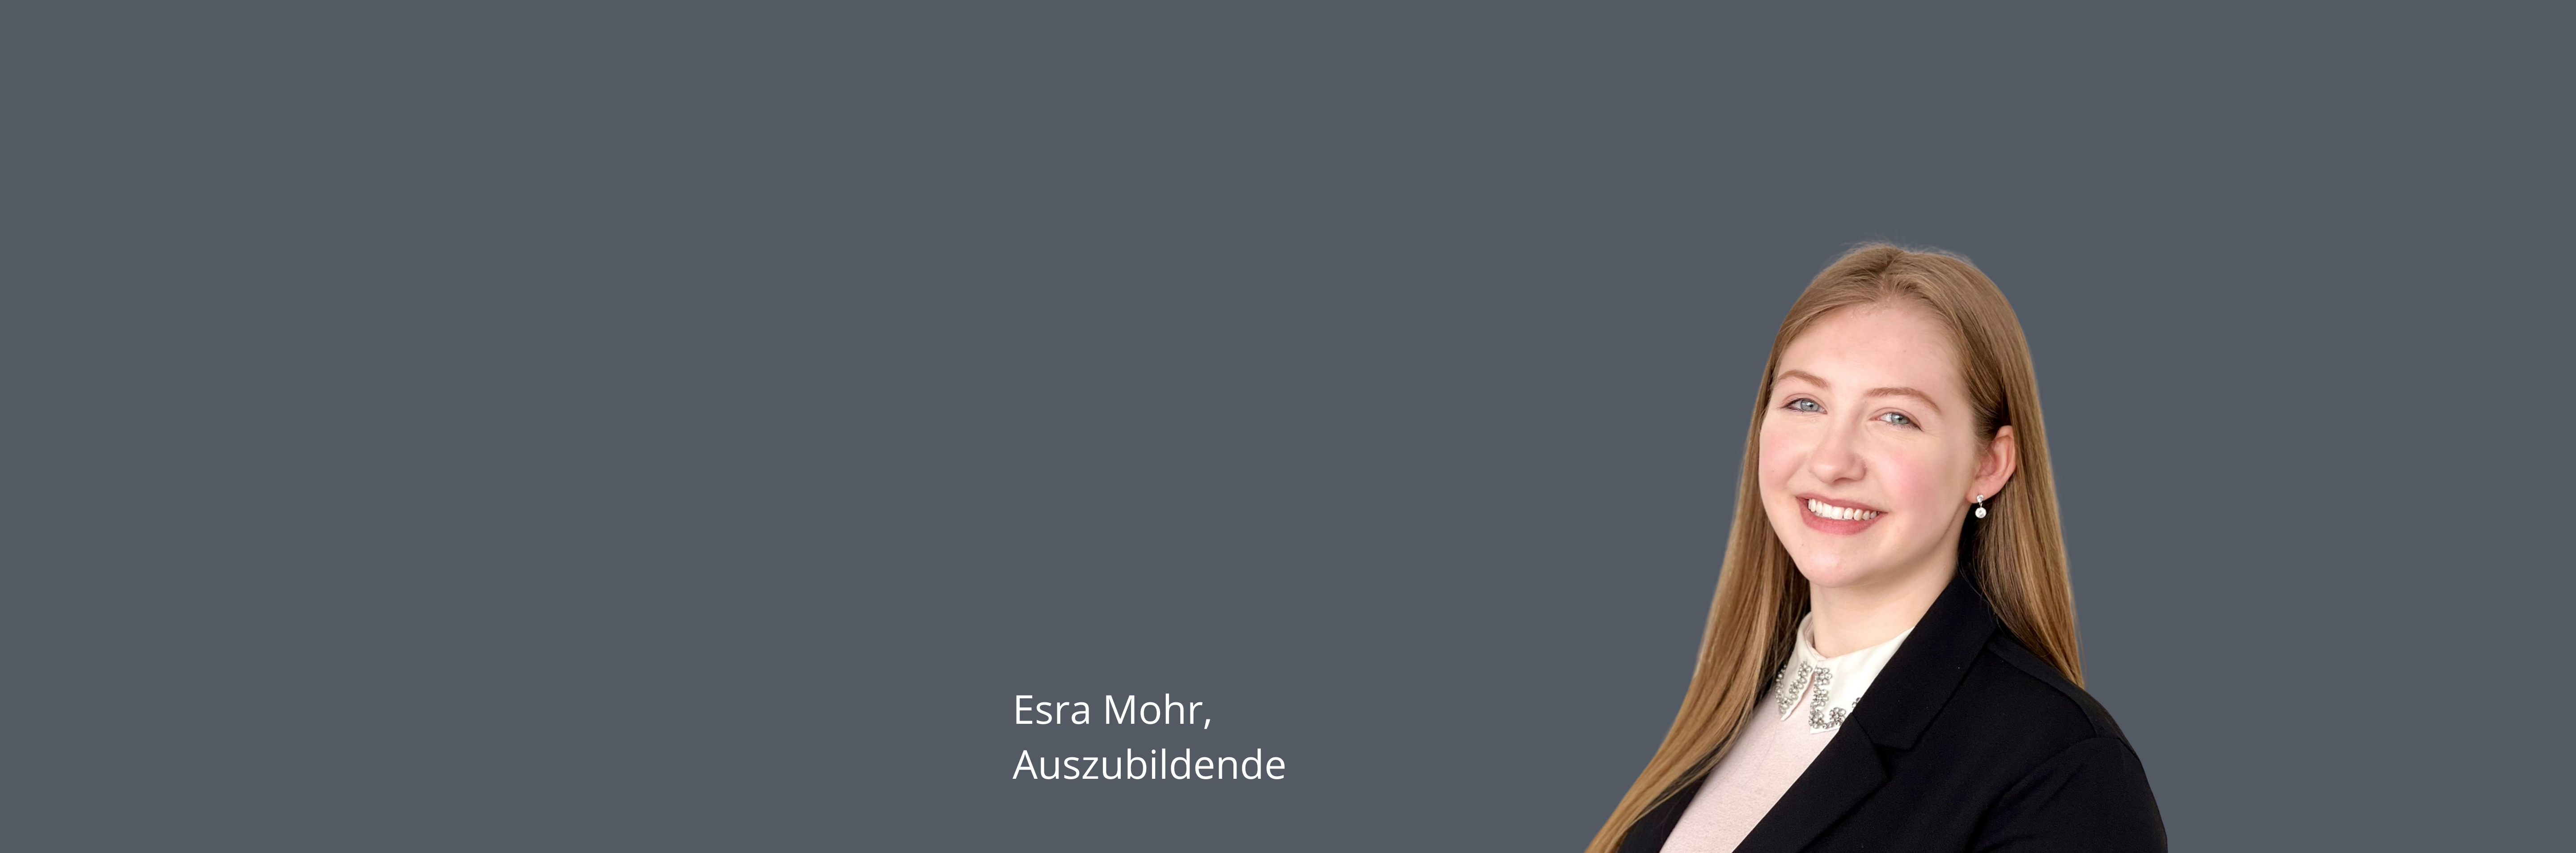 Esra_Website_Header